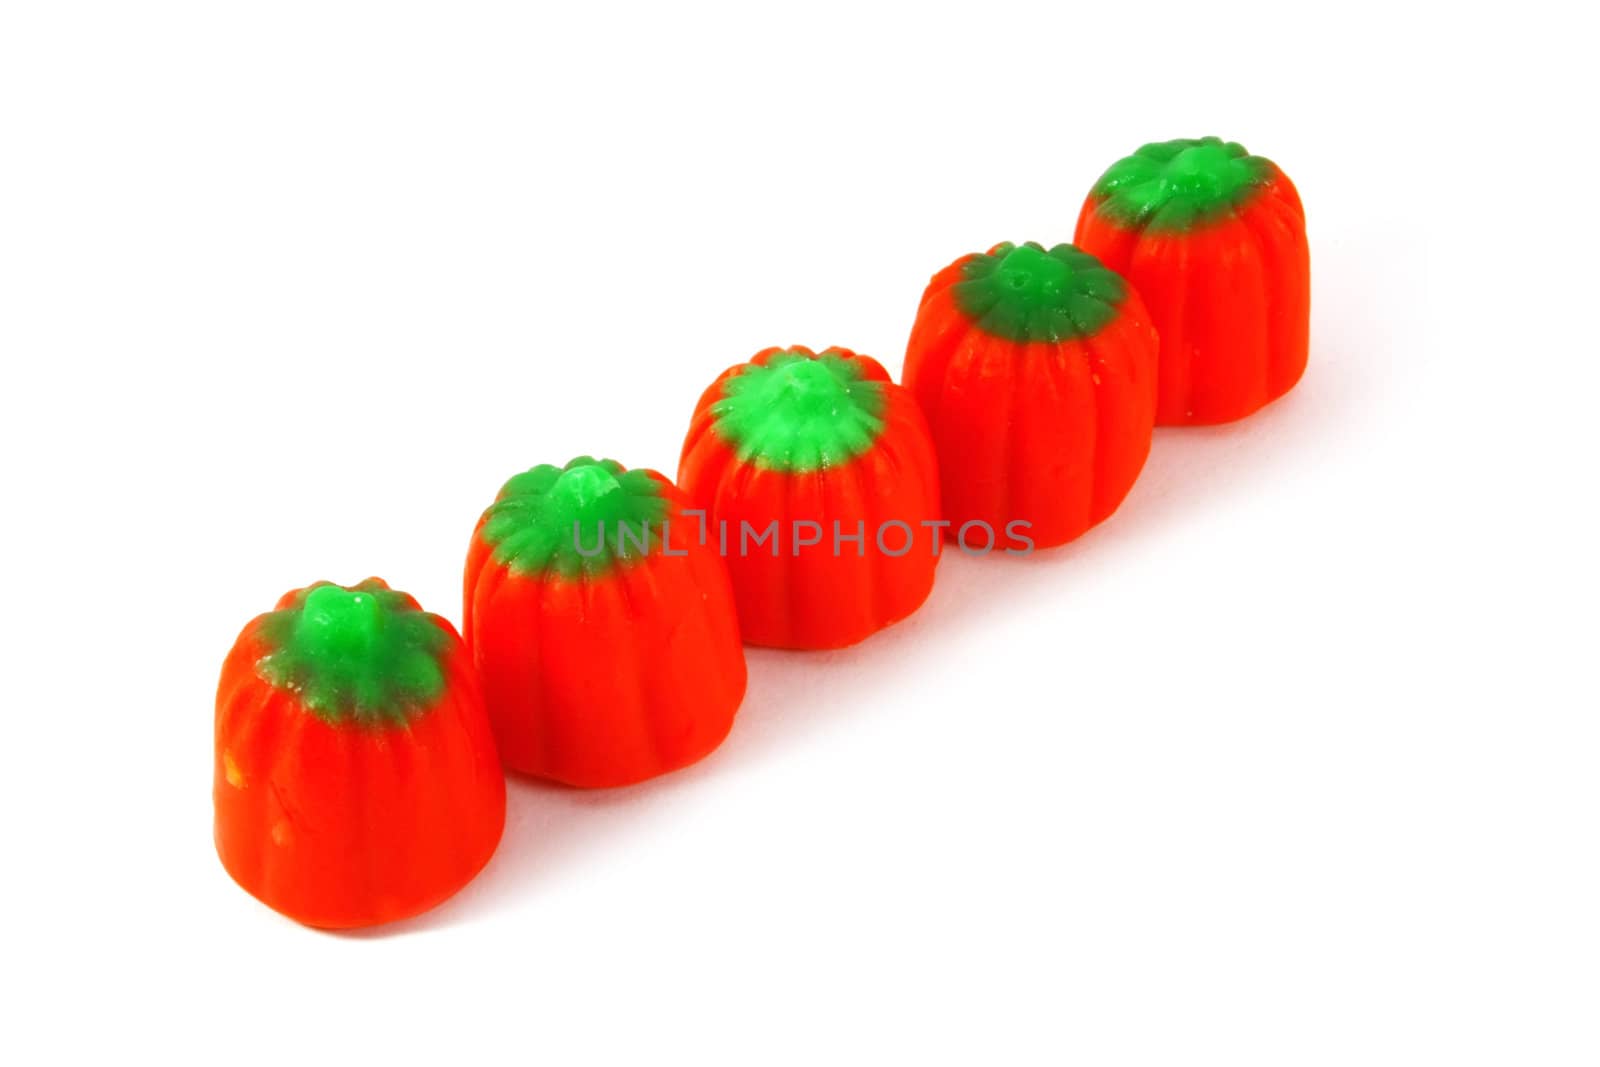 Pumpkins by kentoh